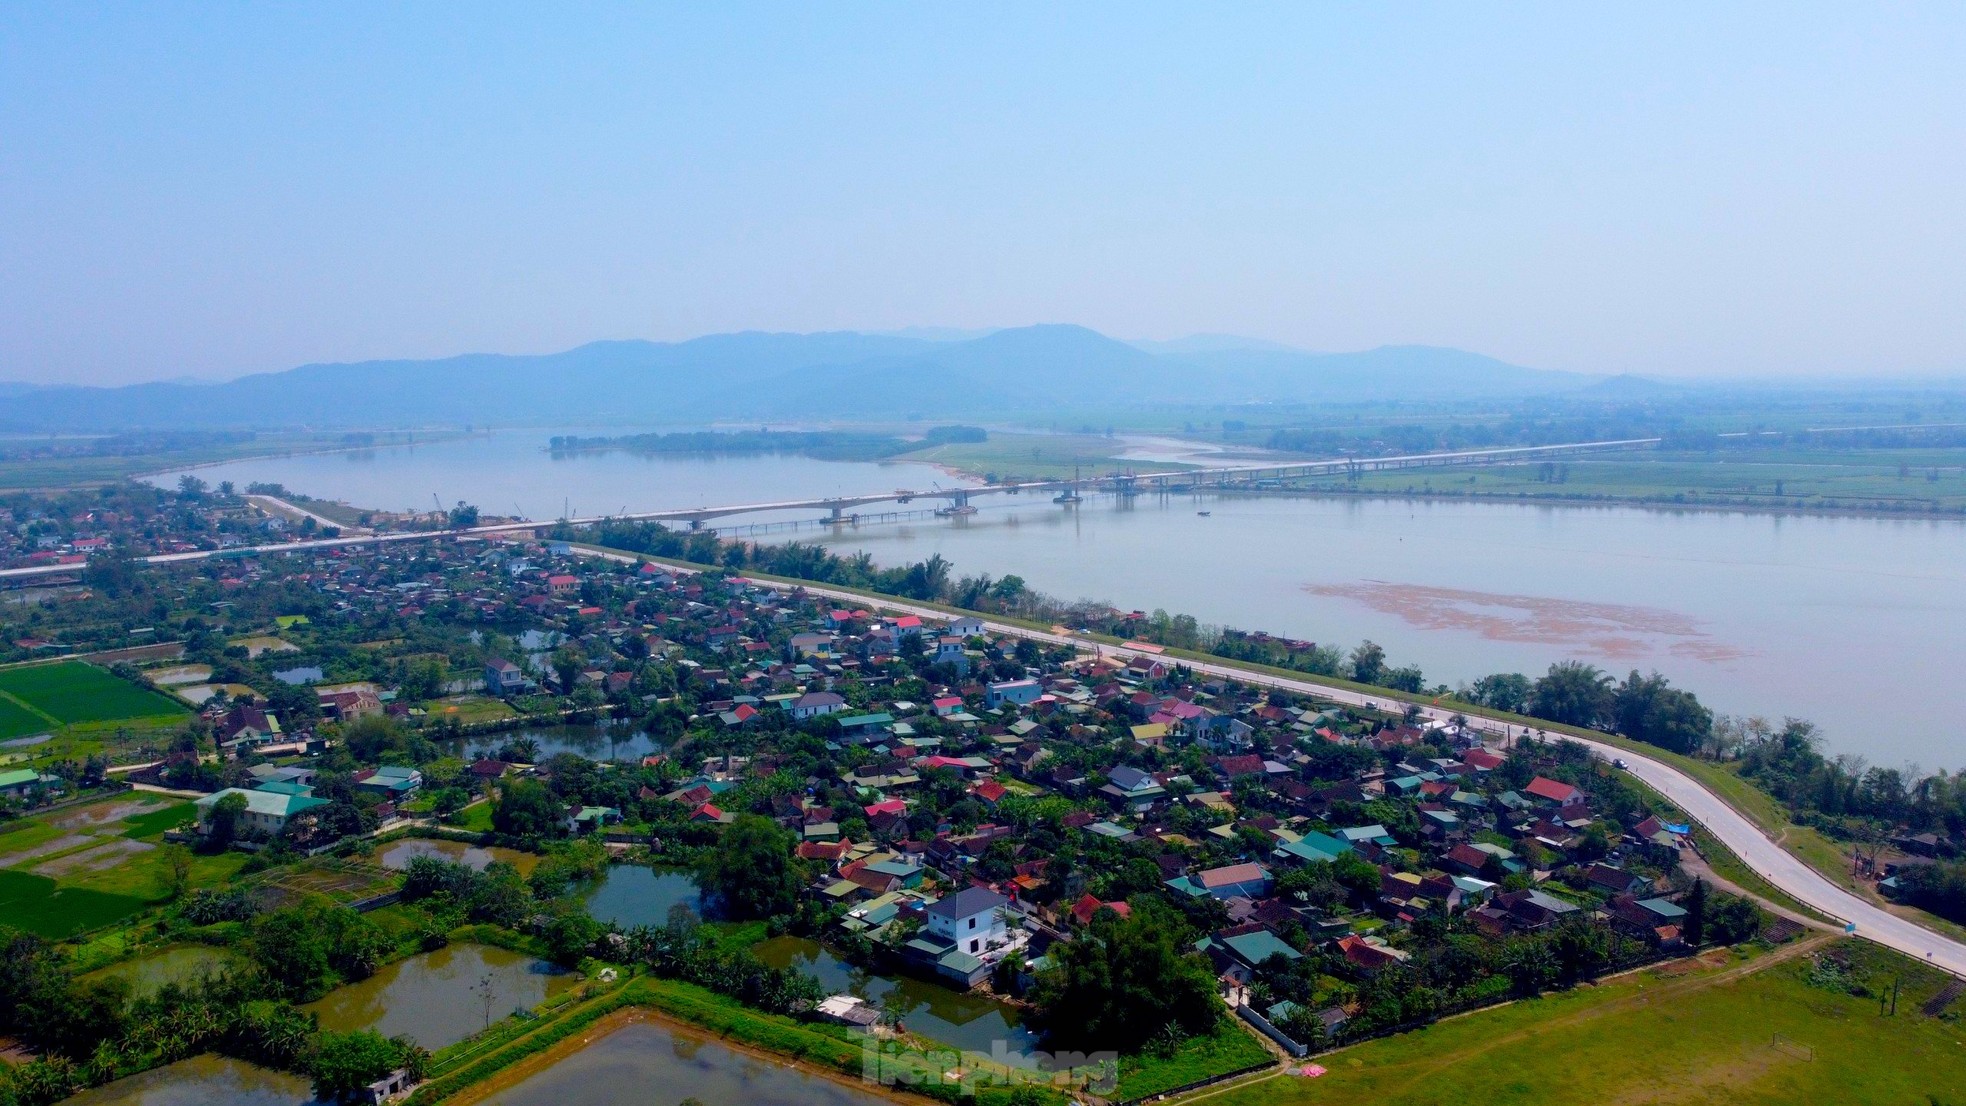 Cầu vượt sông nối 2 tỉnh Nghệ An và Hà Tĩnh trước ngày hợp long- Ảnh 1.